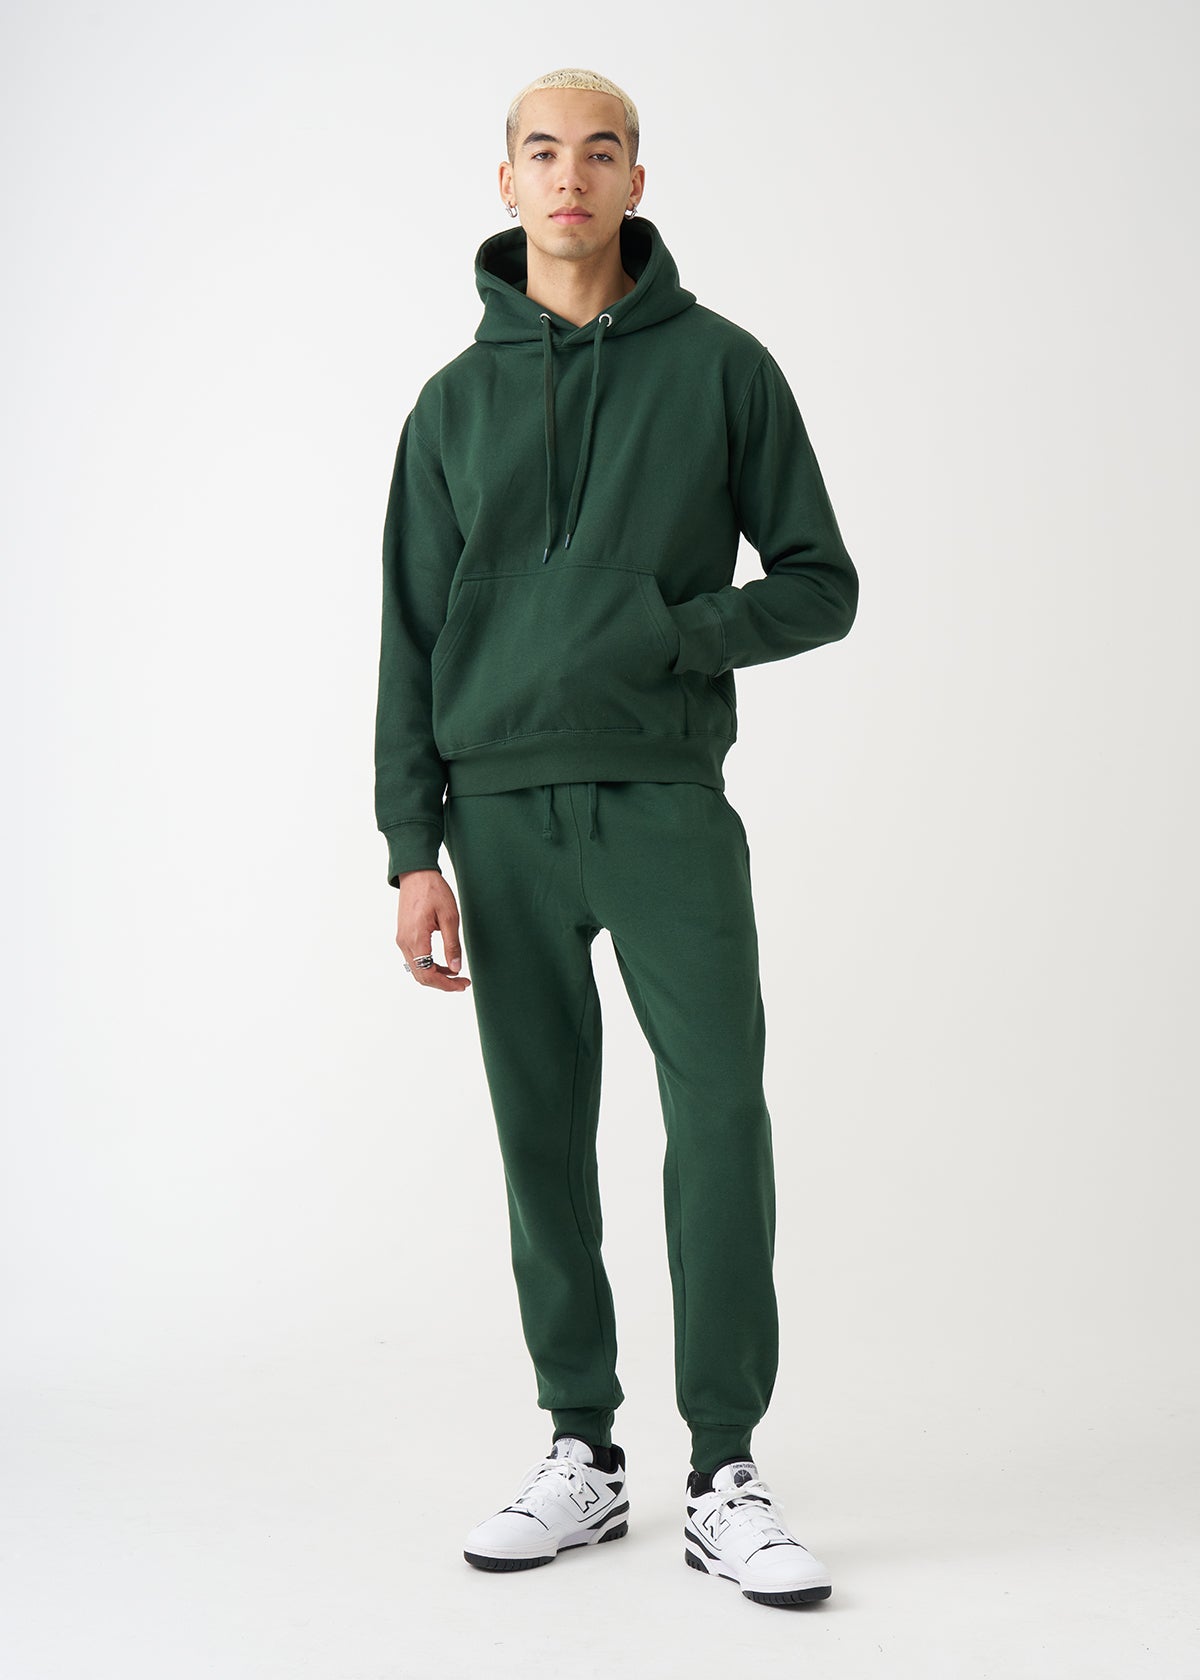 Hunter Green Heavy Blend Fleece SweatSuit